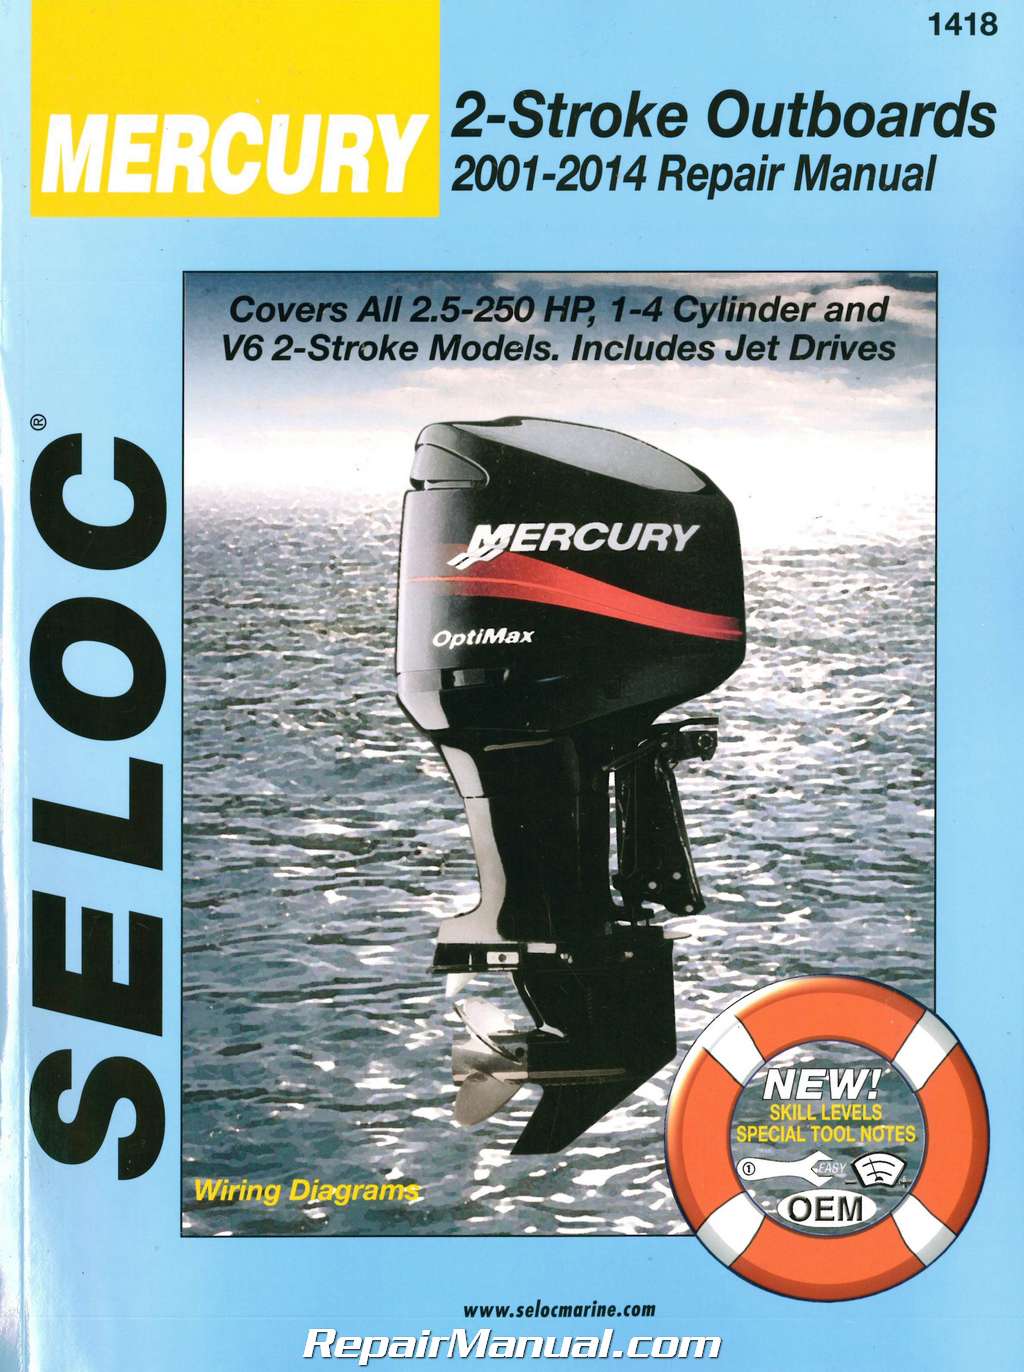 Seloc 20012014 Mercury Mariner Outboards 2 Stroke 2.5250 hp Boat Engine Repair Manual